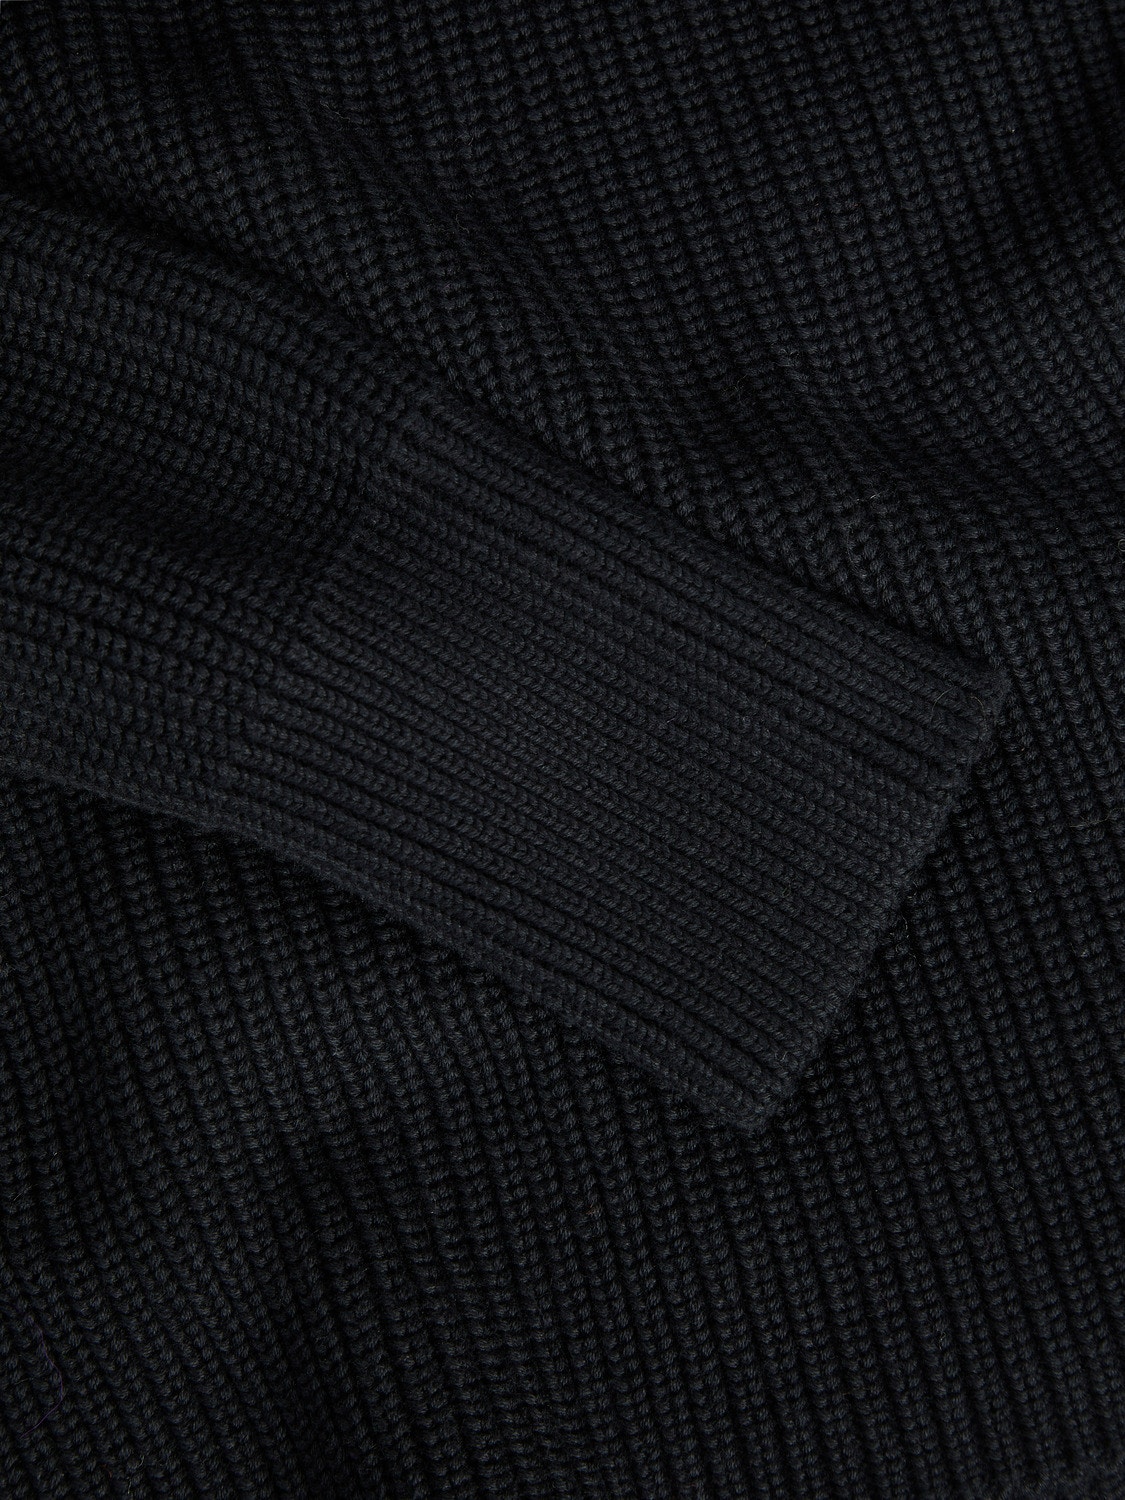 JJXX JXSANDRA Knitted Dress -Black - 12213299